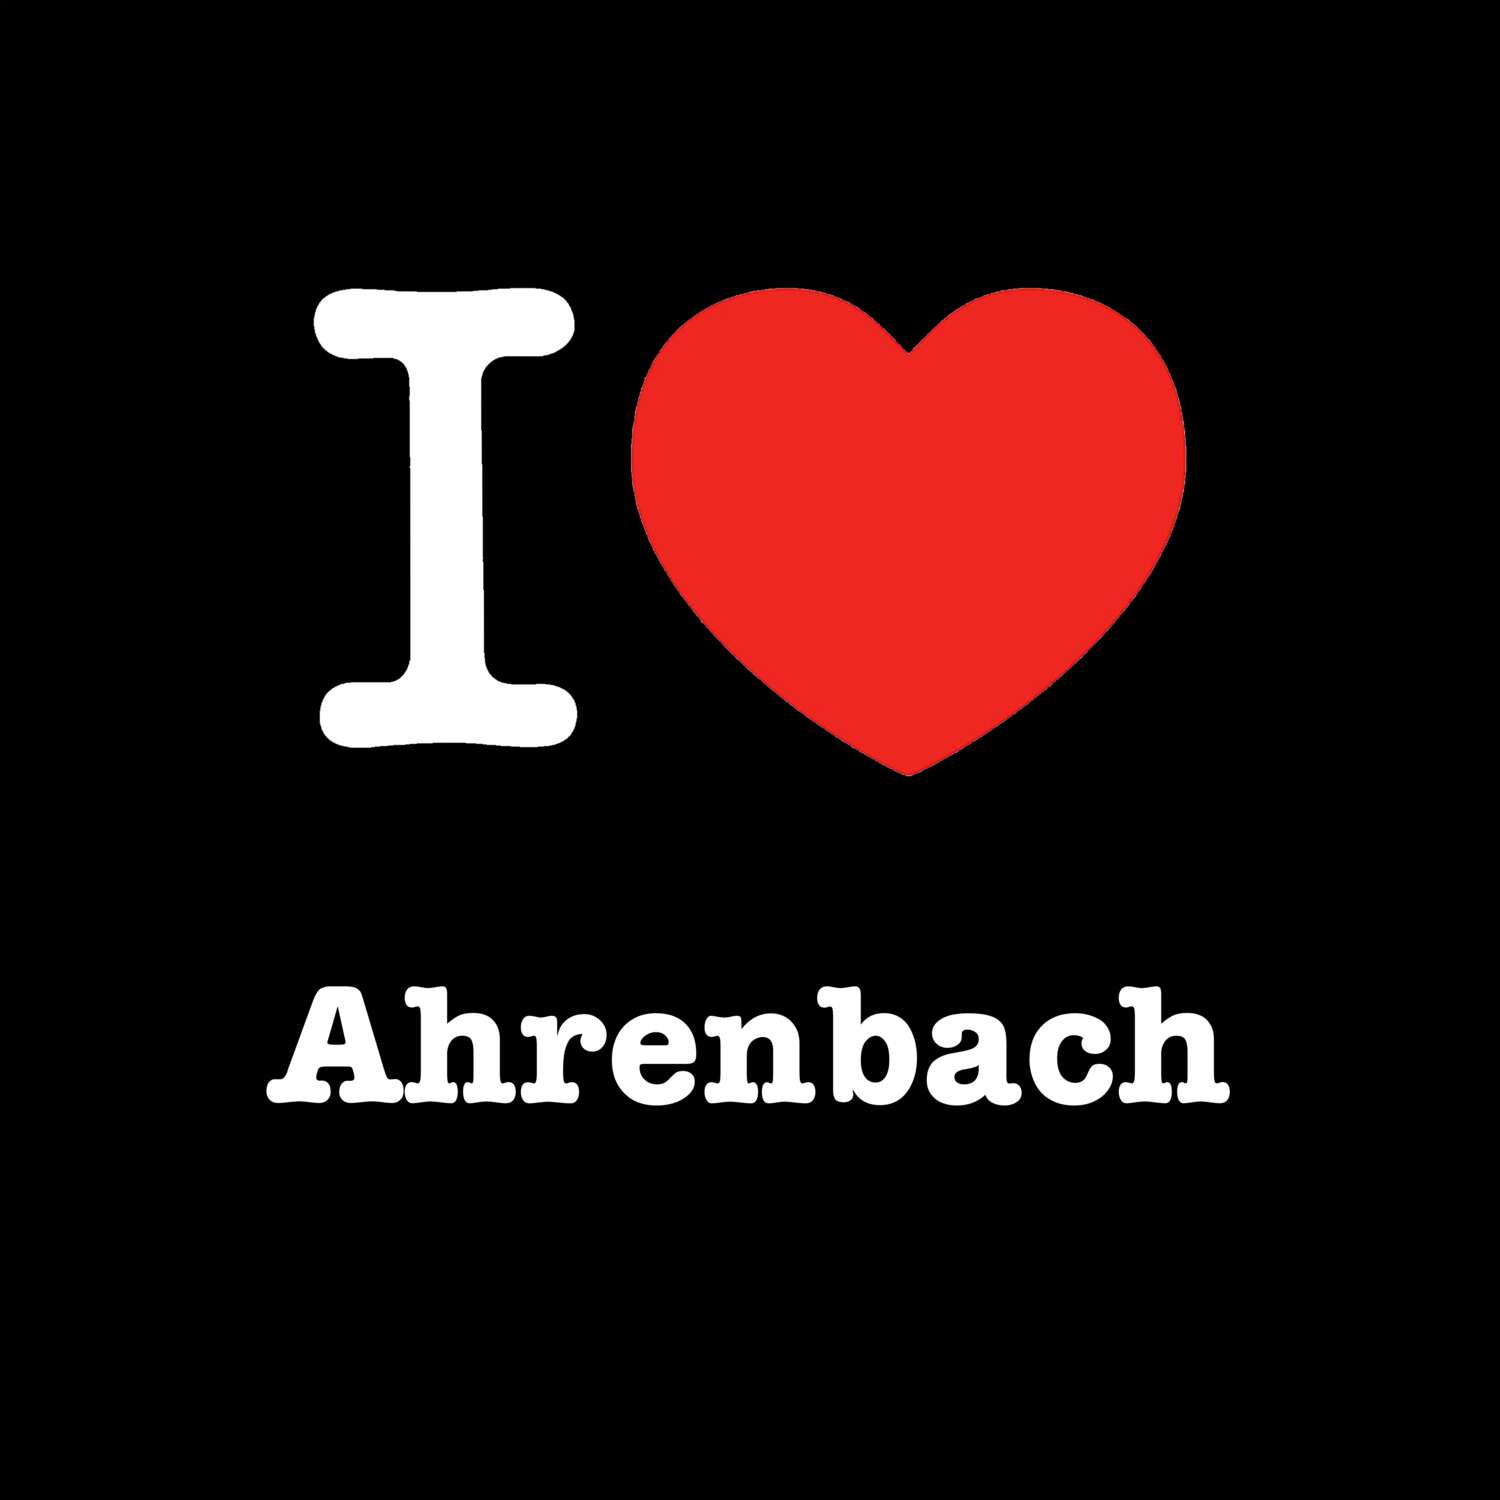 Ahrenbach T-Shirt »I love«